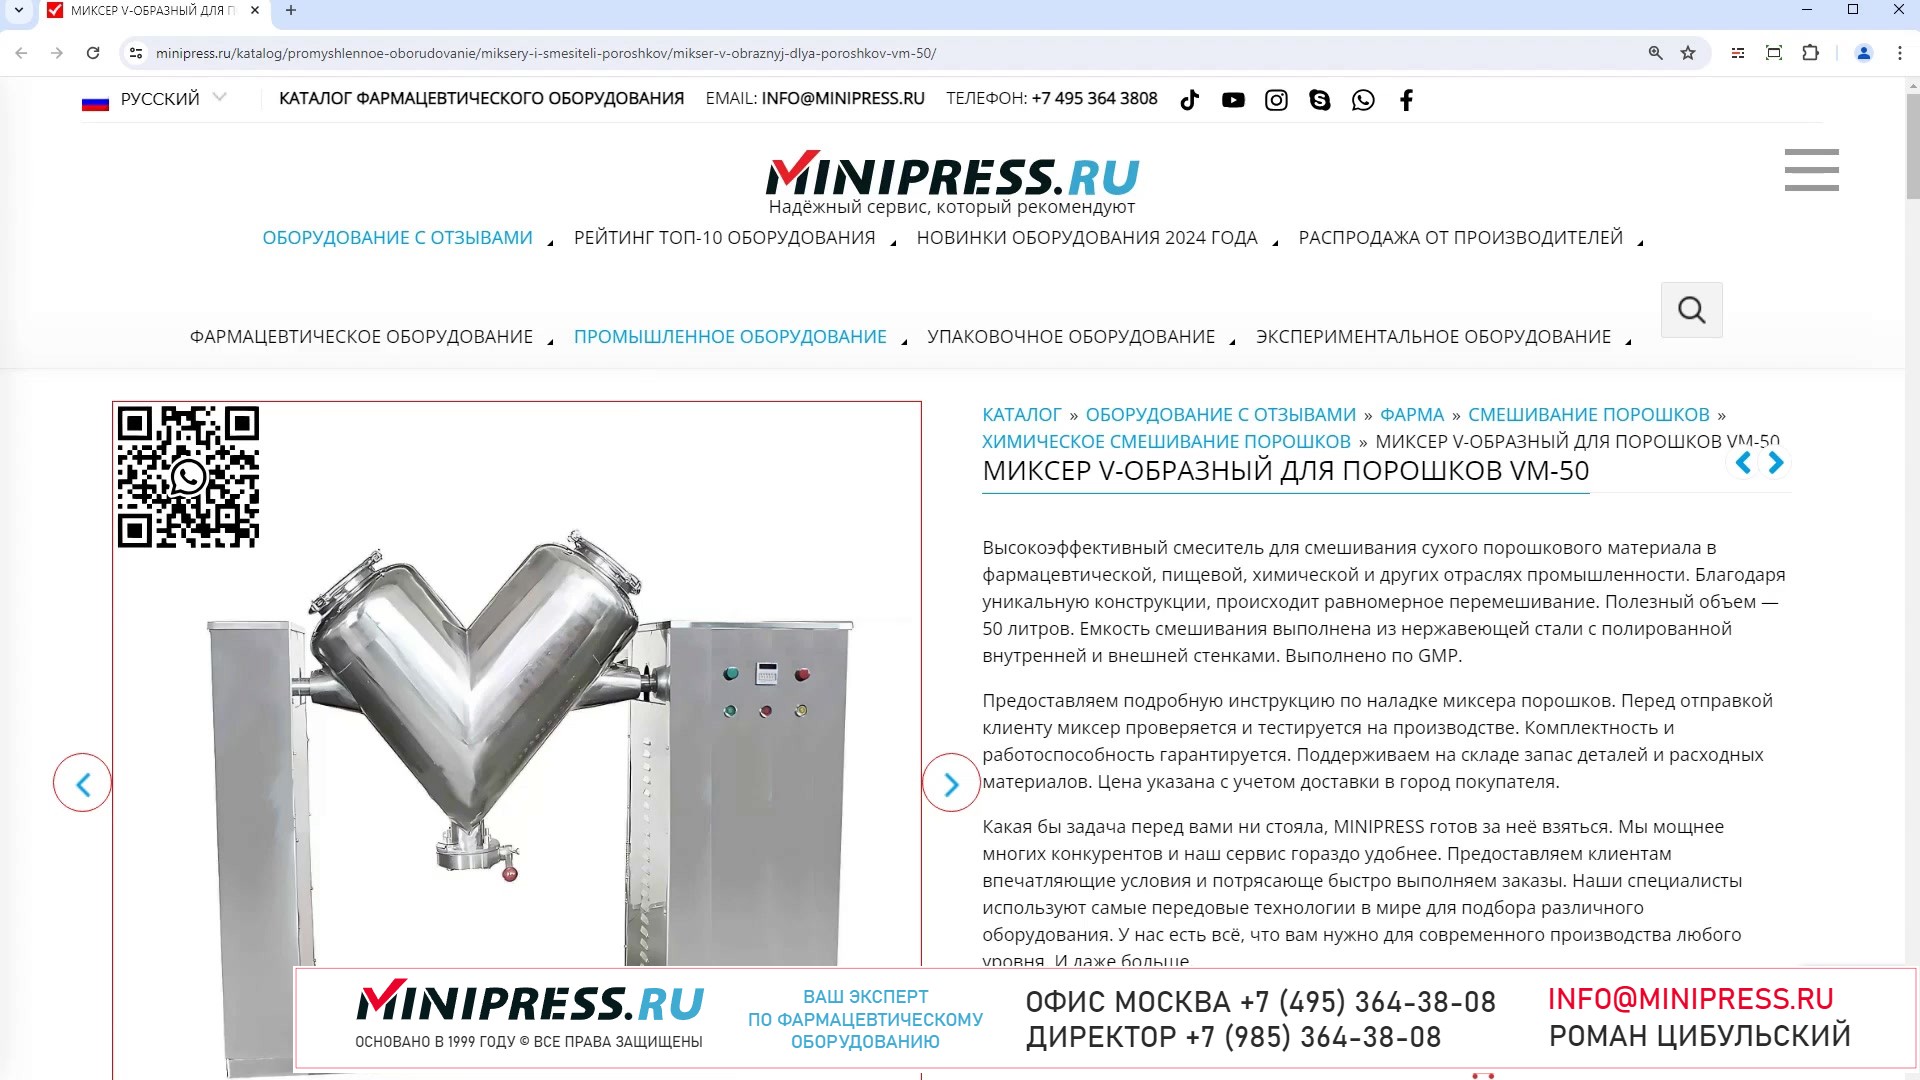 Minipress.ru Миксер V-образный для порошков VM-50